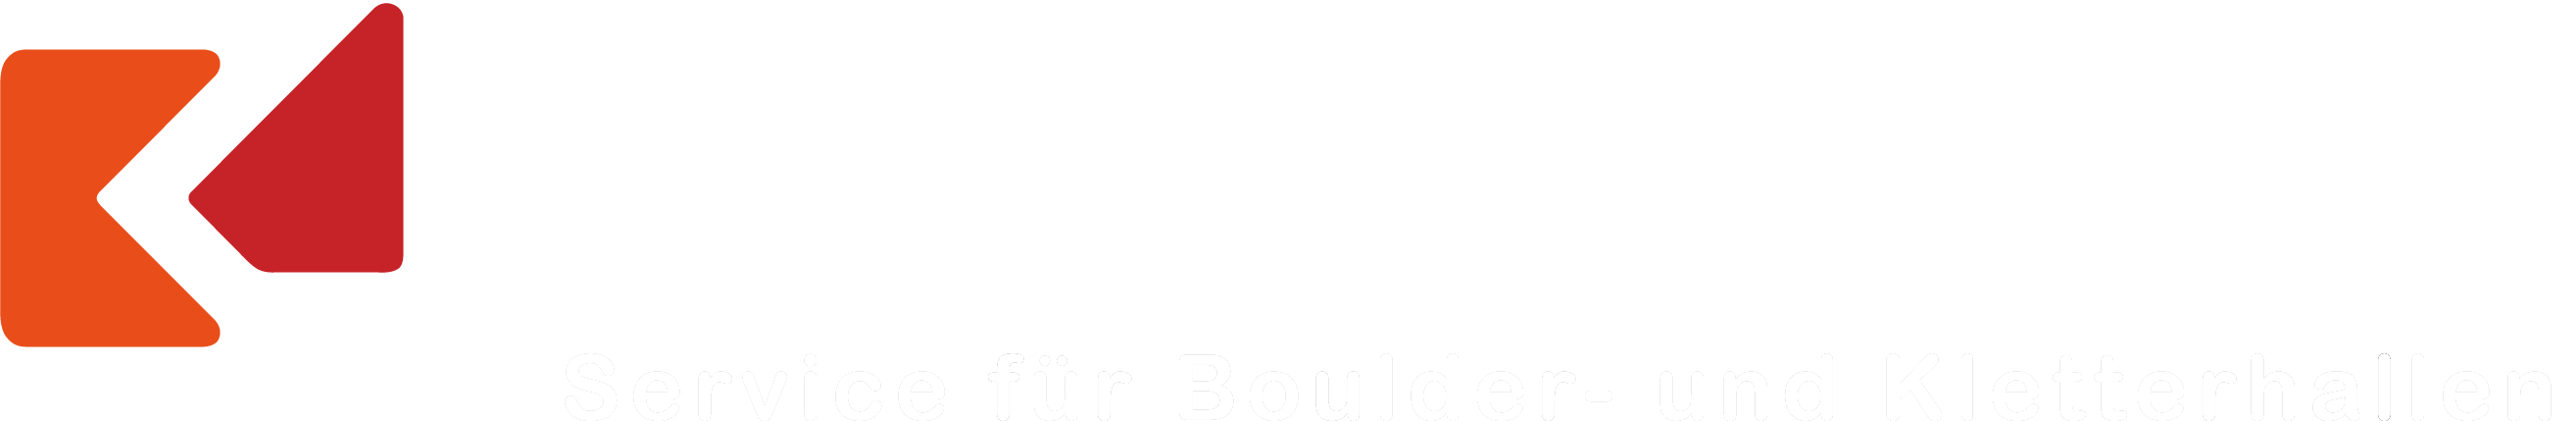 kletterkultur-logo-boulder-kletter-service